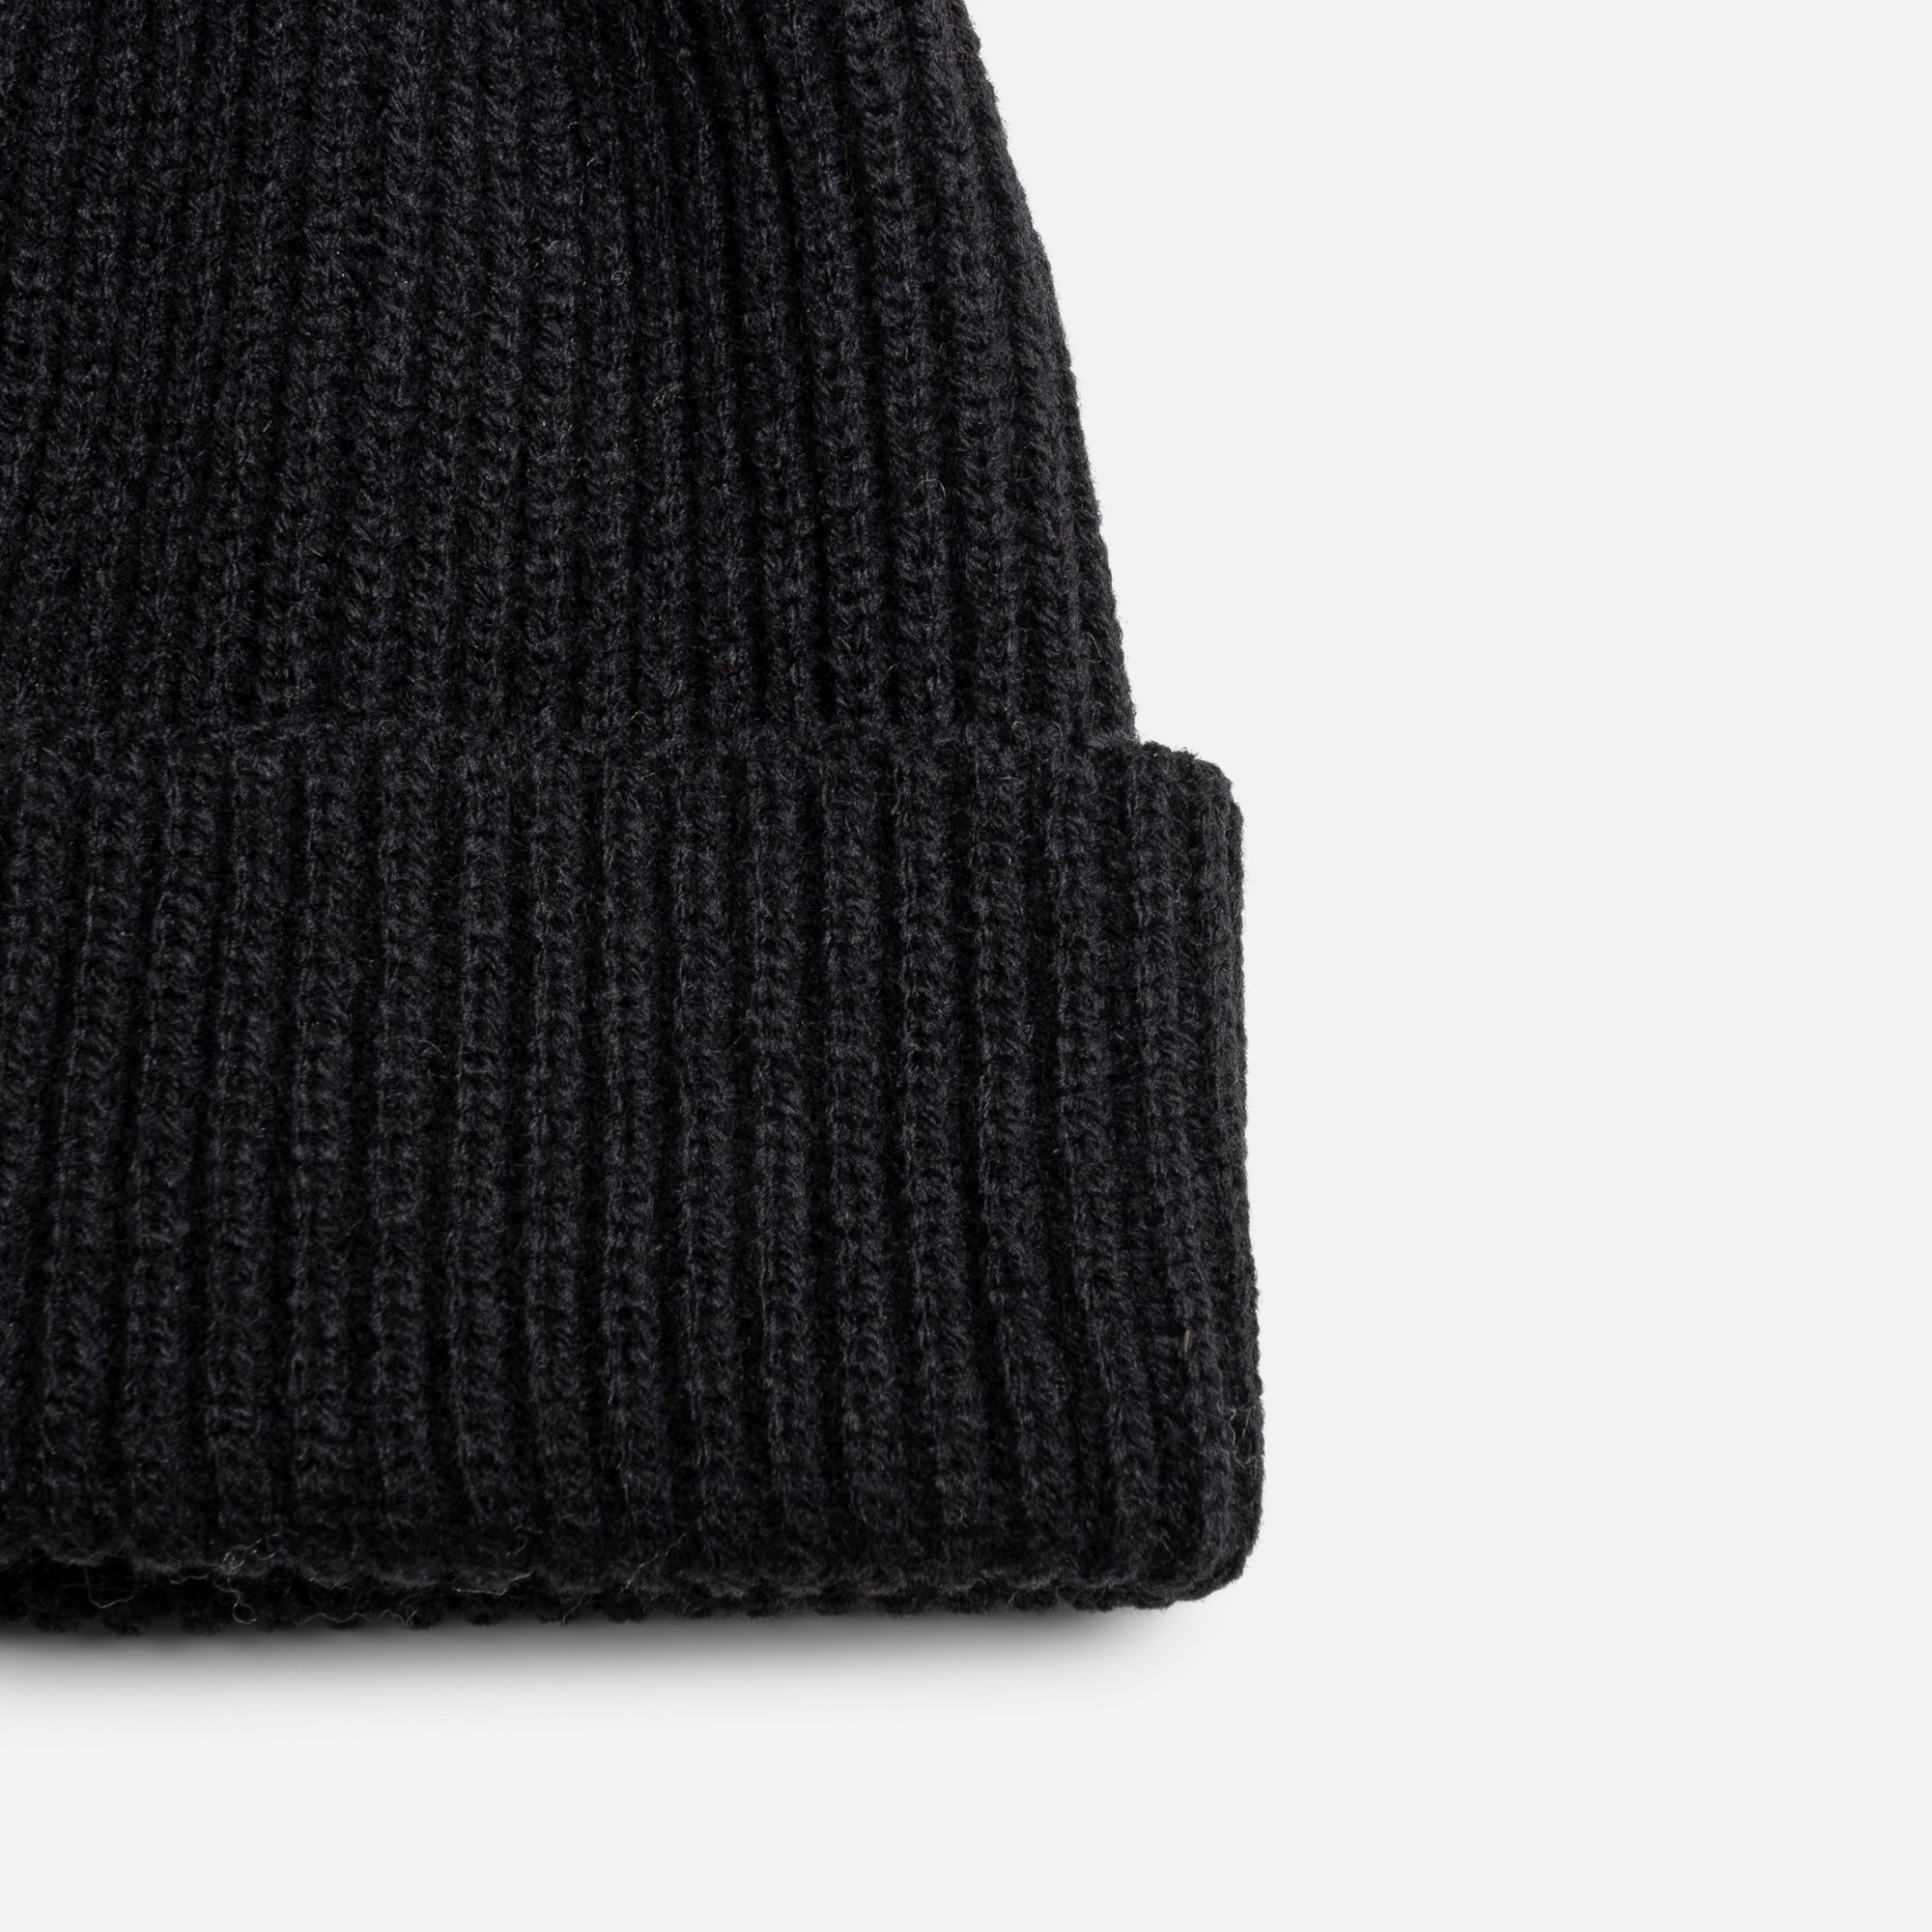 Black knit beanie with pompom